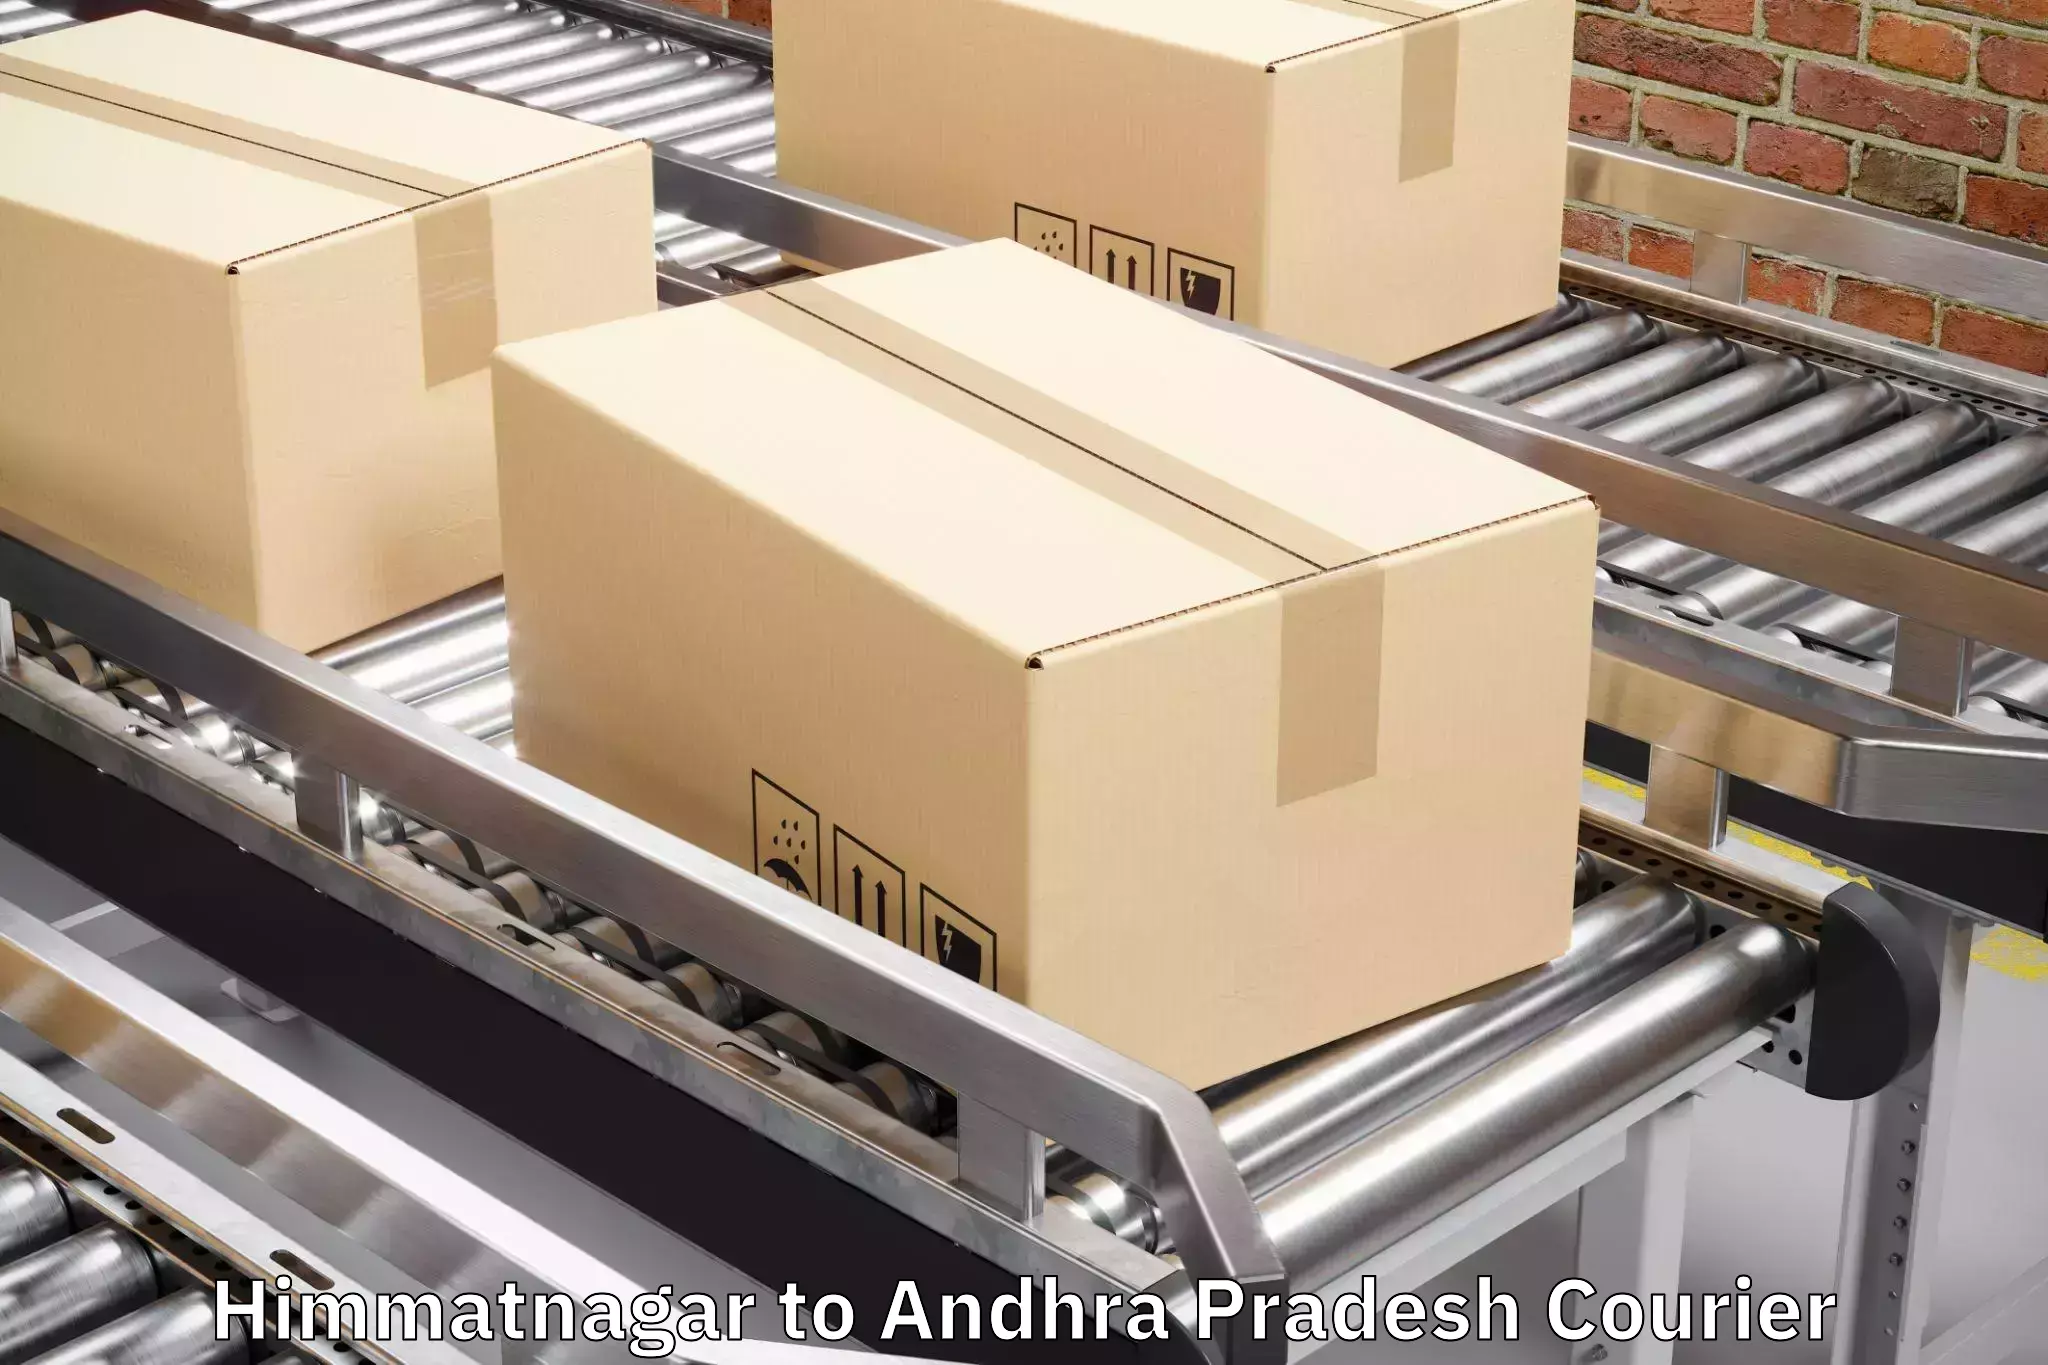 Luggage delivery estimate in Himmatnagar to Andhra Pradesh